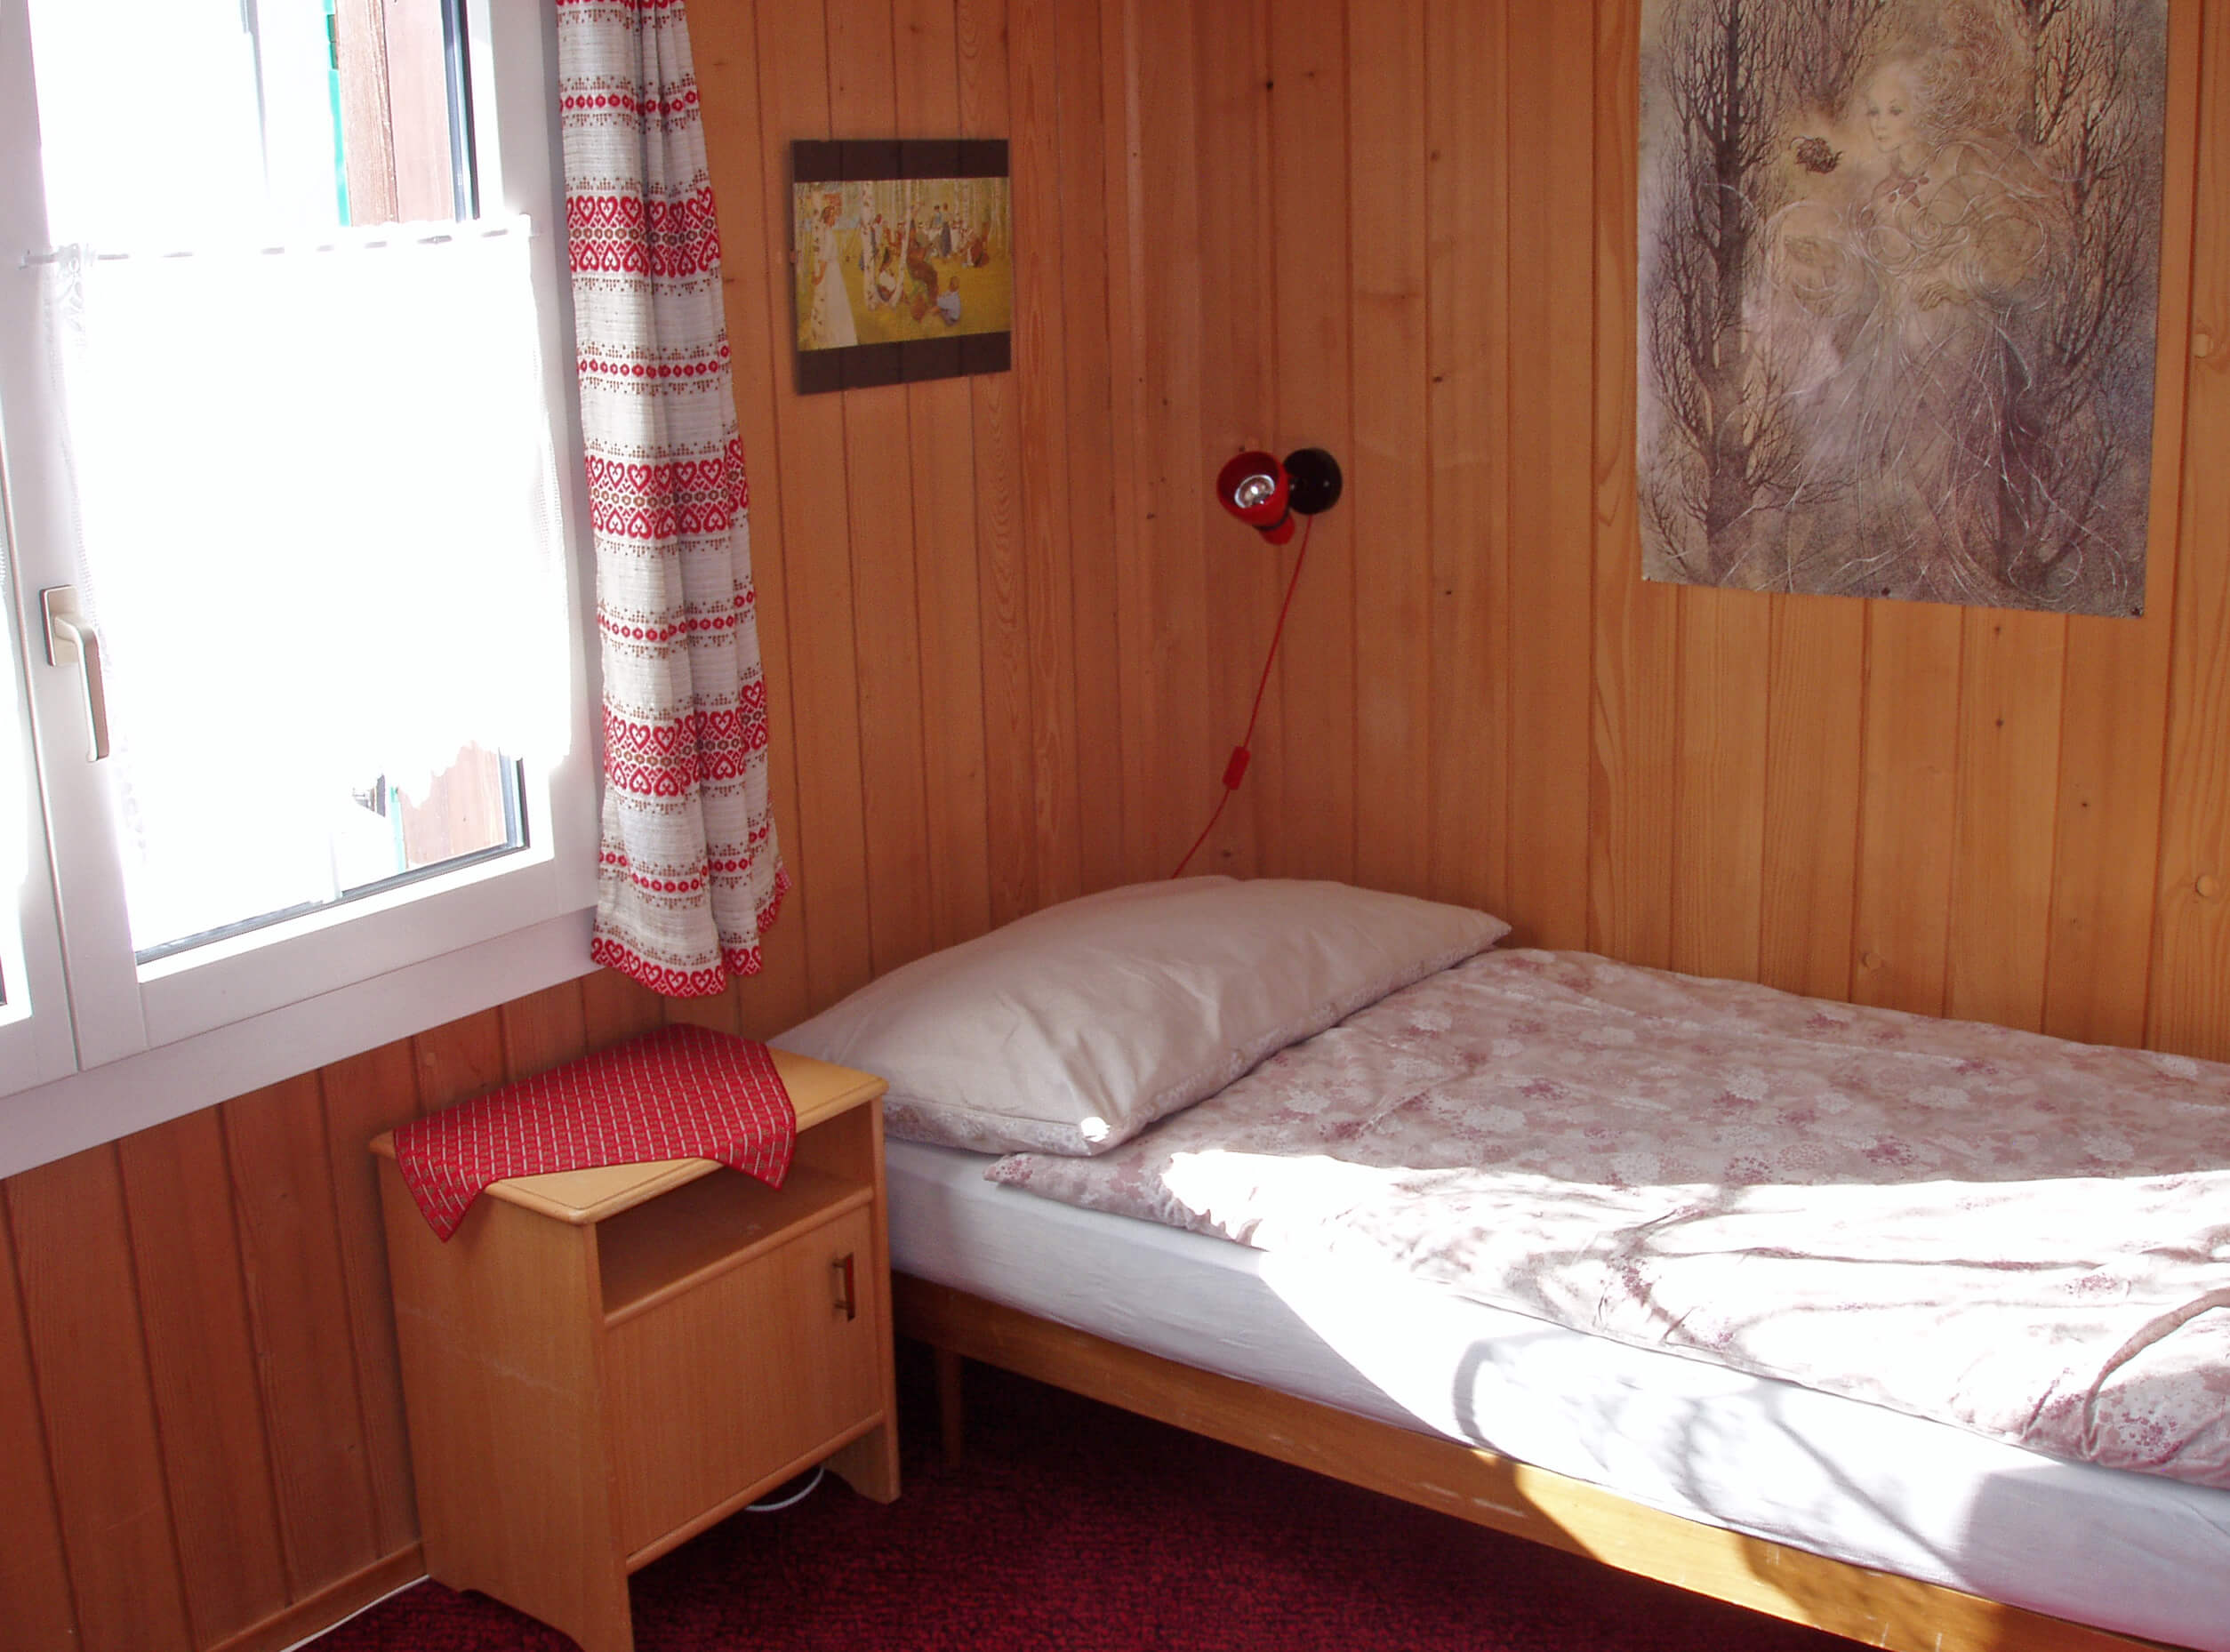 Zimmer mit Einzelbett am Fenster